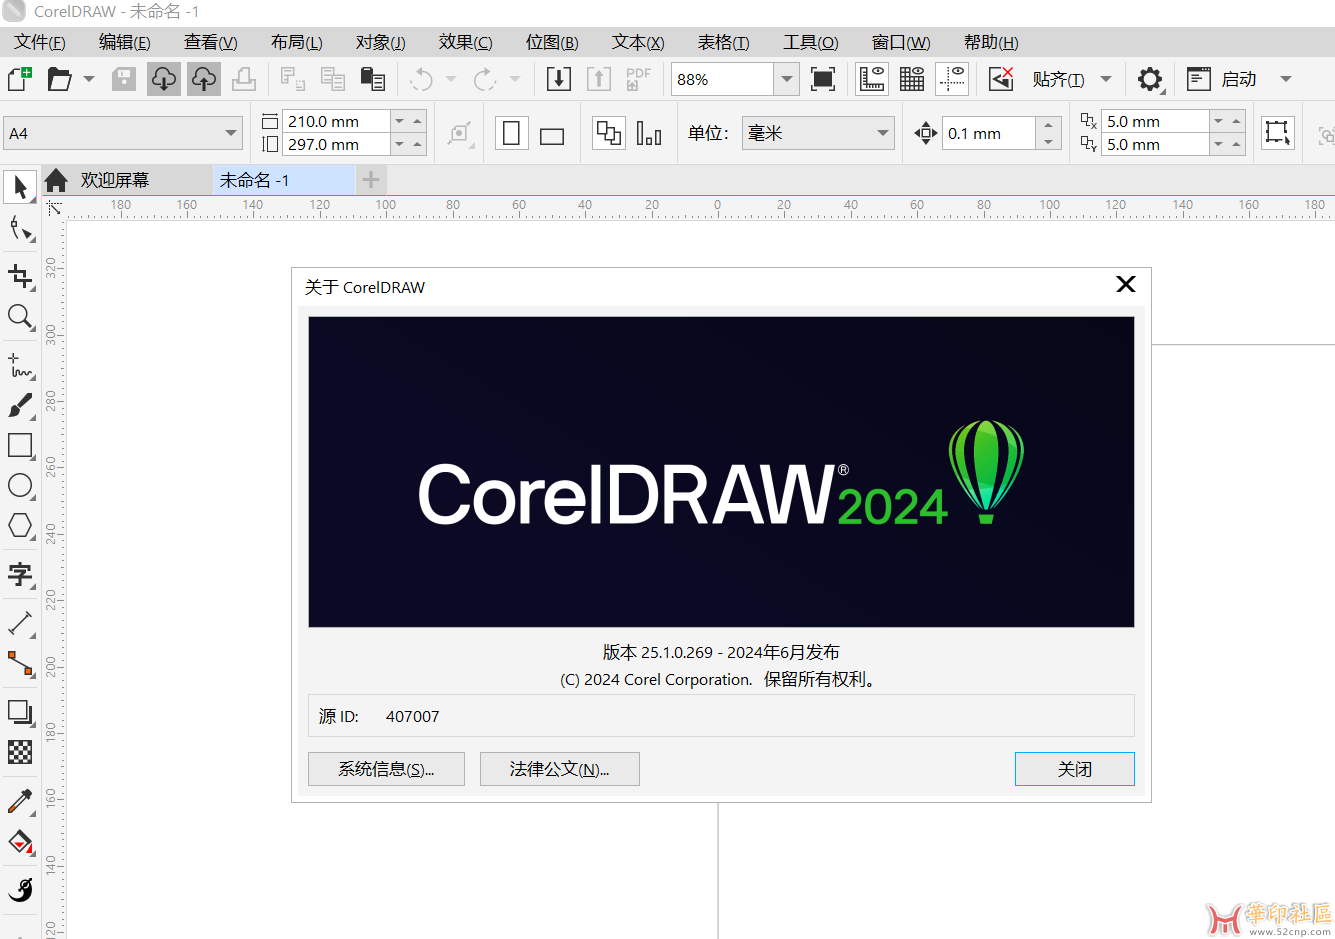 【最新】CorelDRAW 2024 v25.1.0.269 x64 精简直装版{tag}(1)